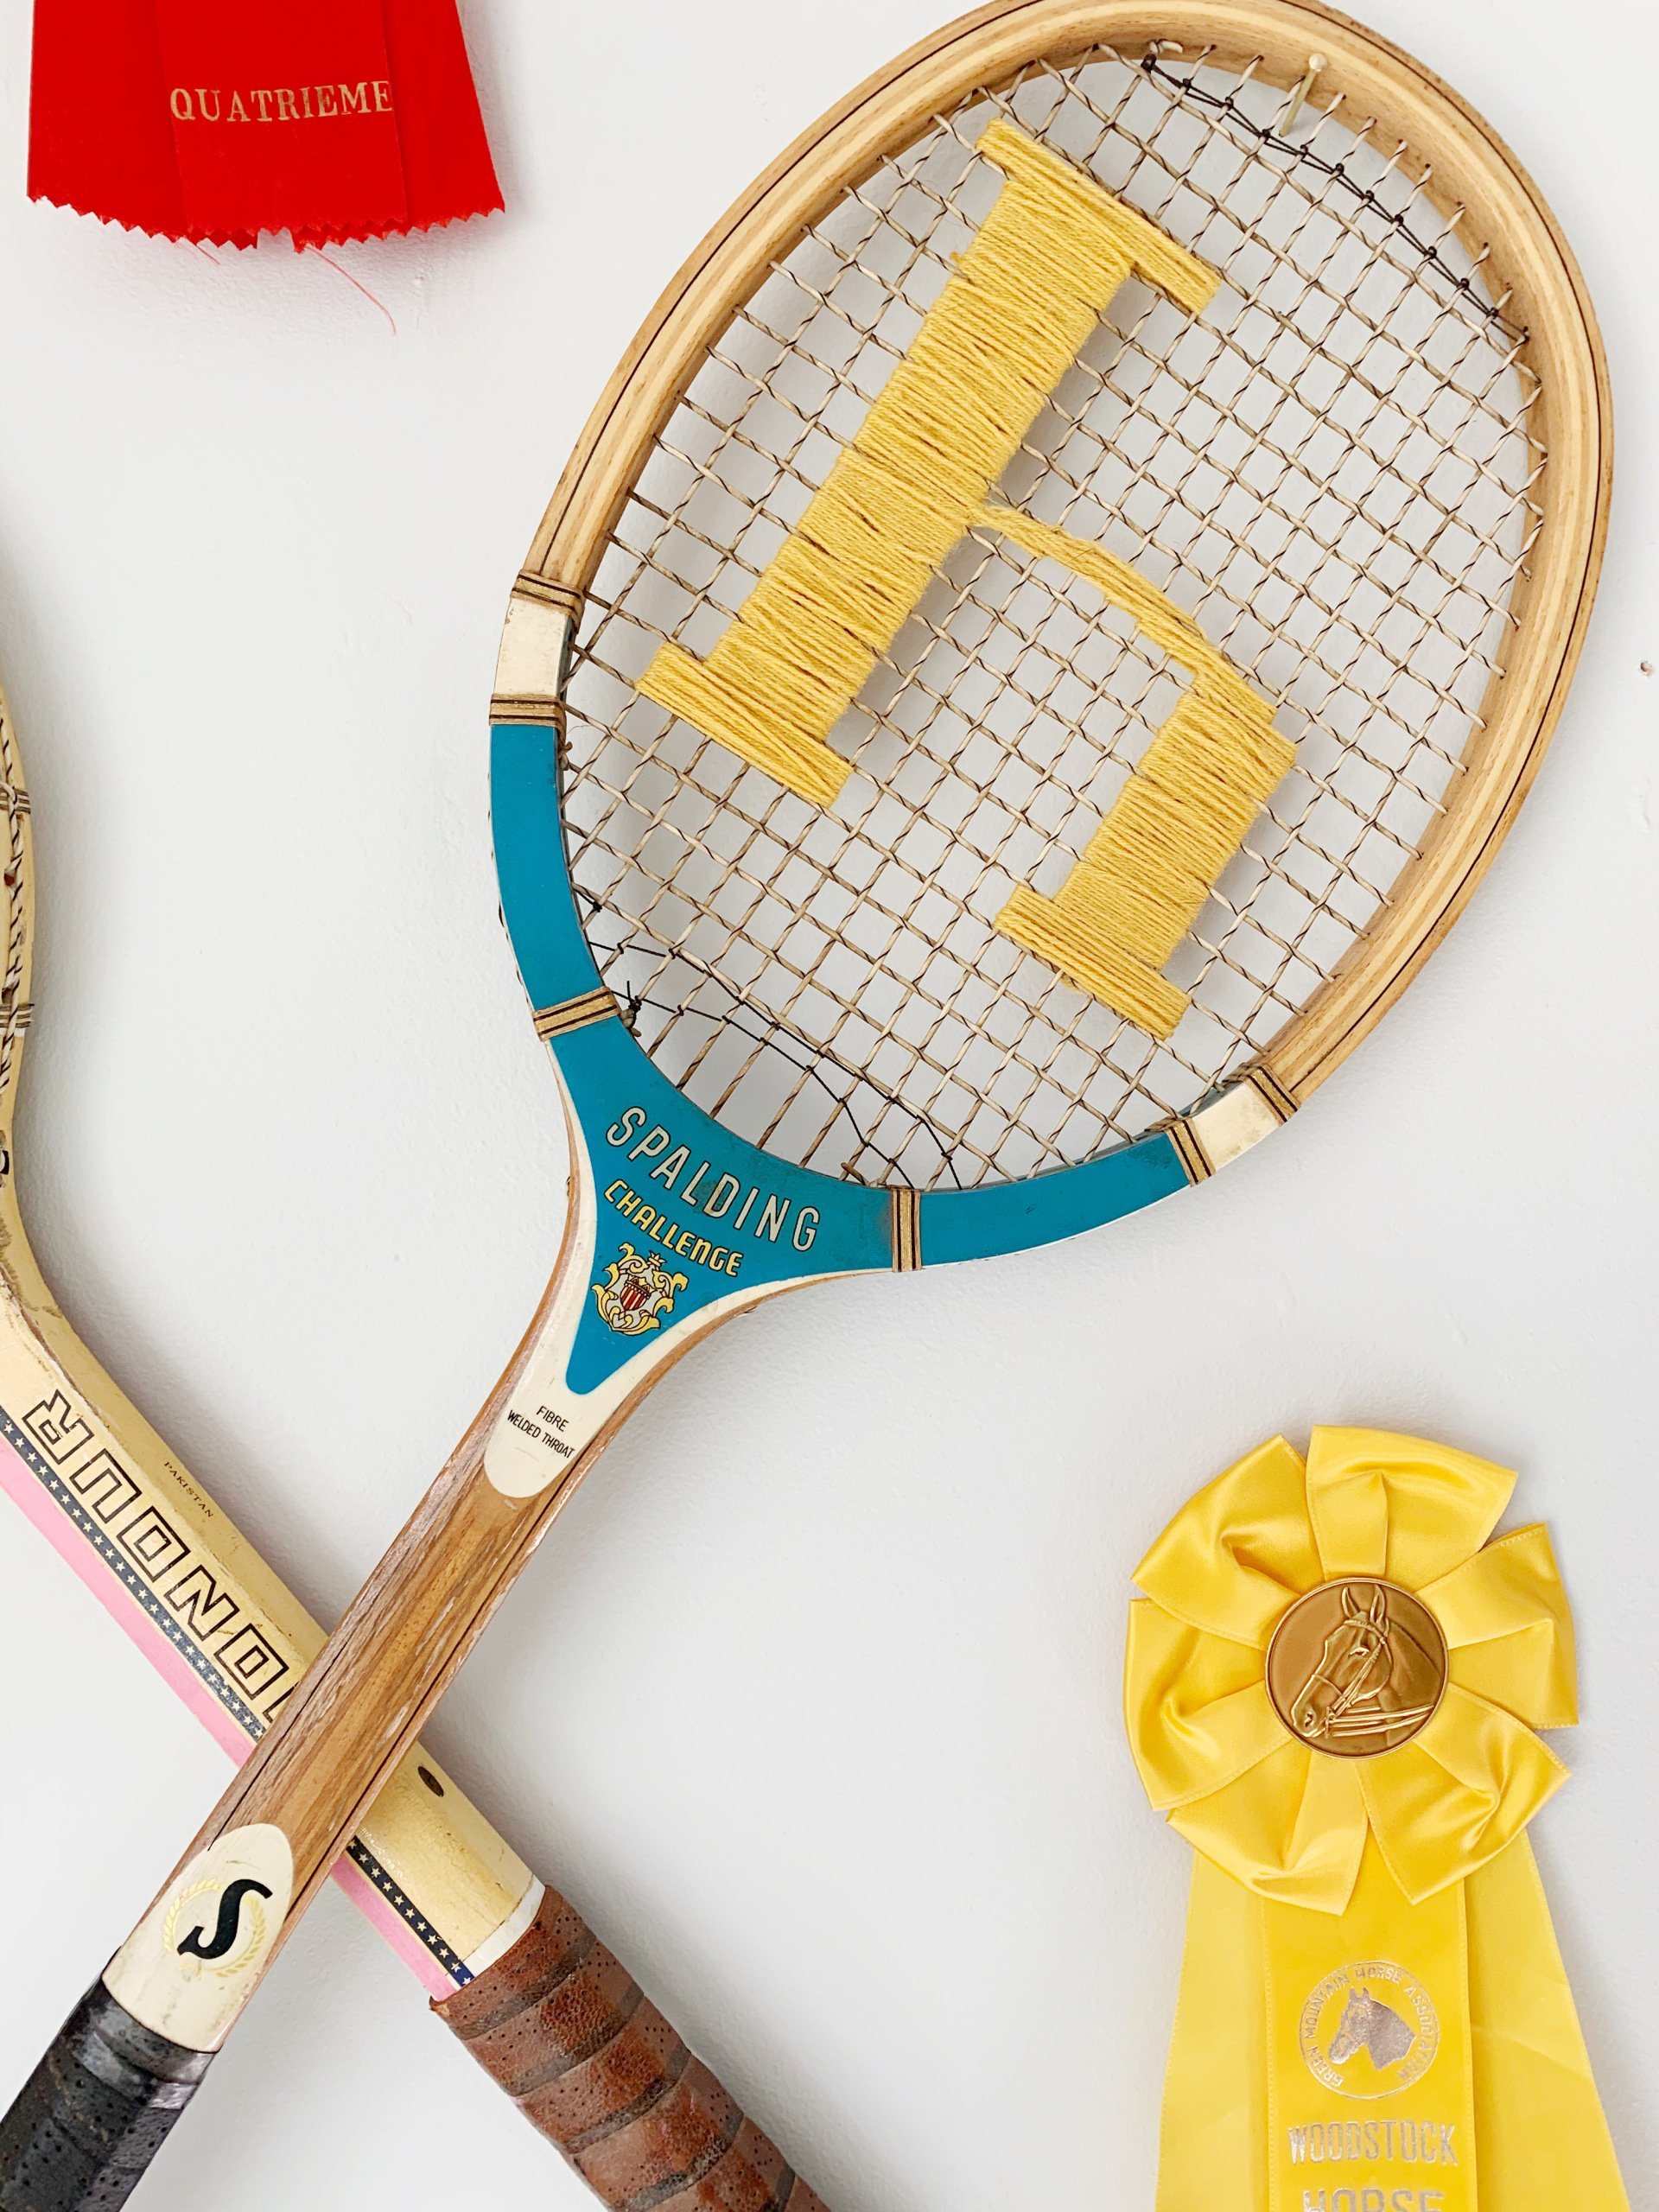 Cute vintage tennis racket brooch